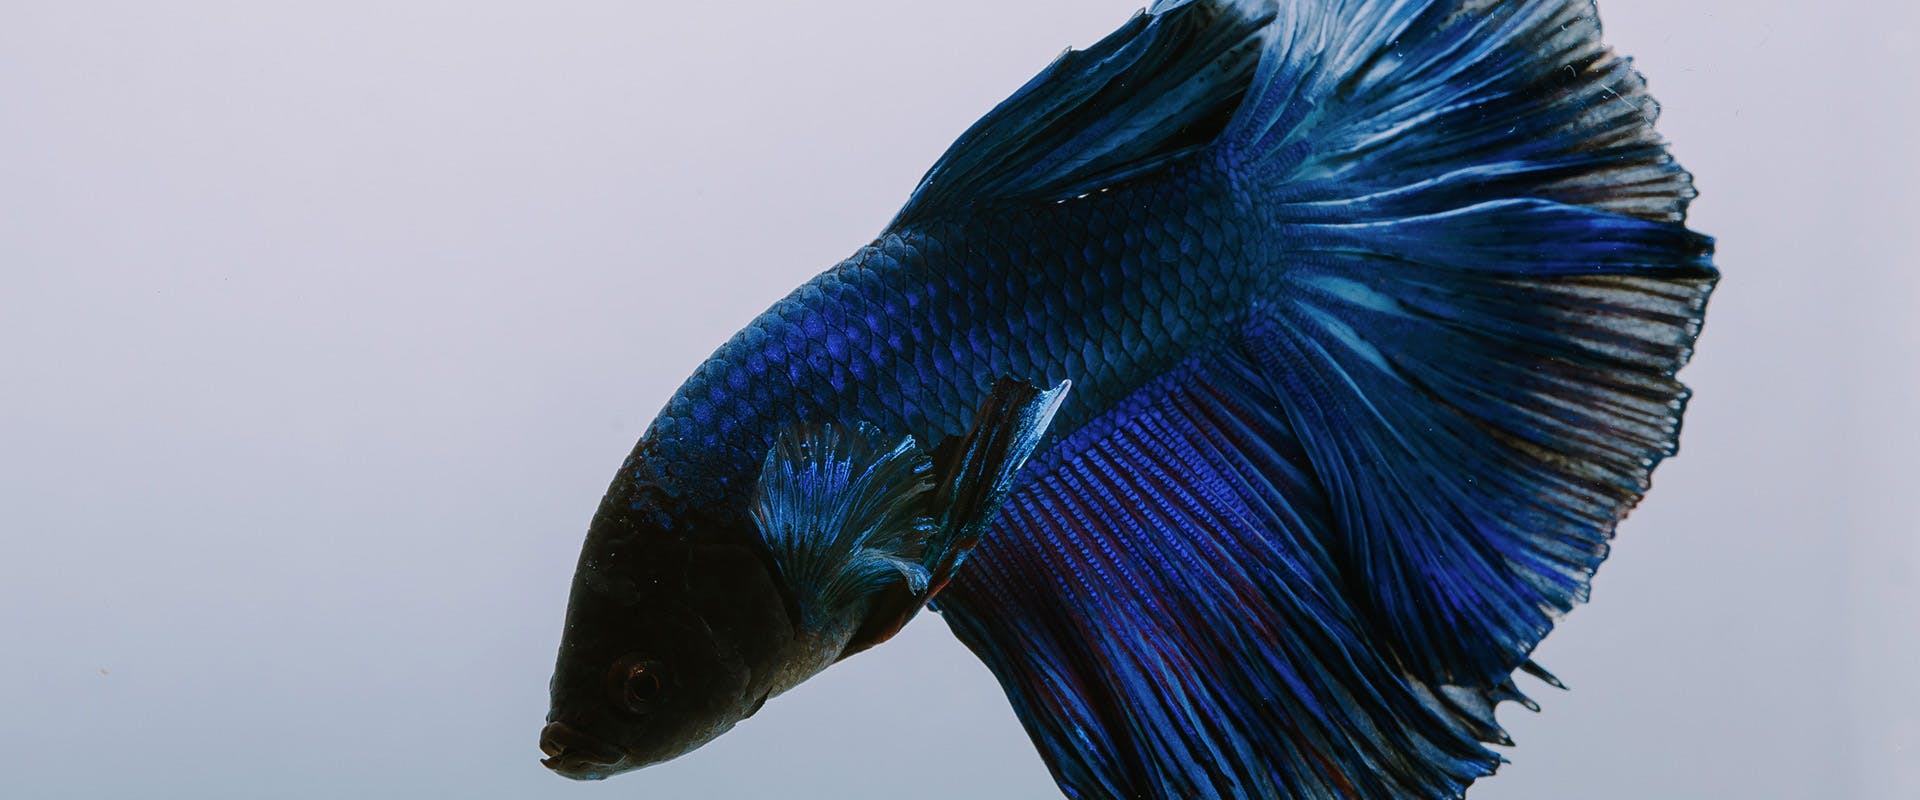 A dark blue betta fish